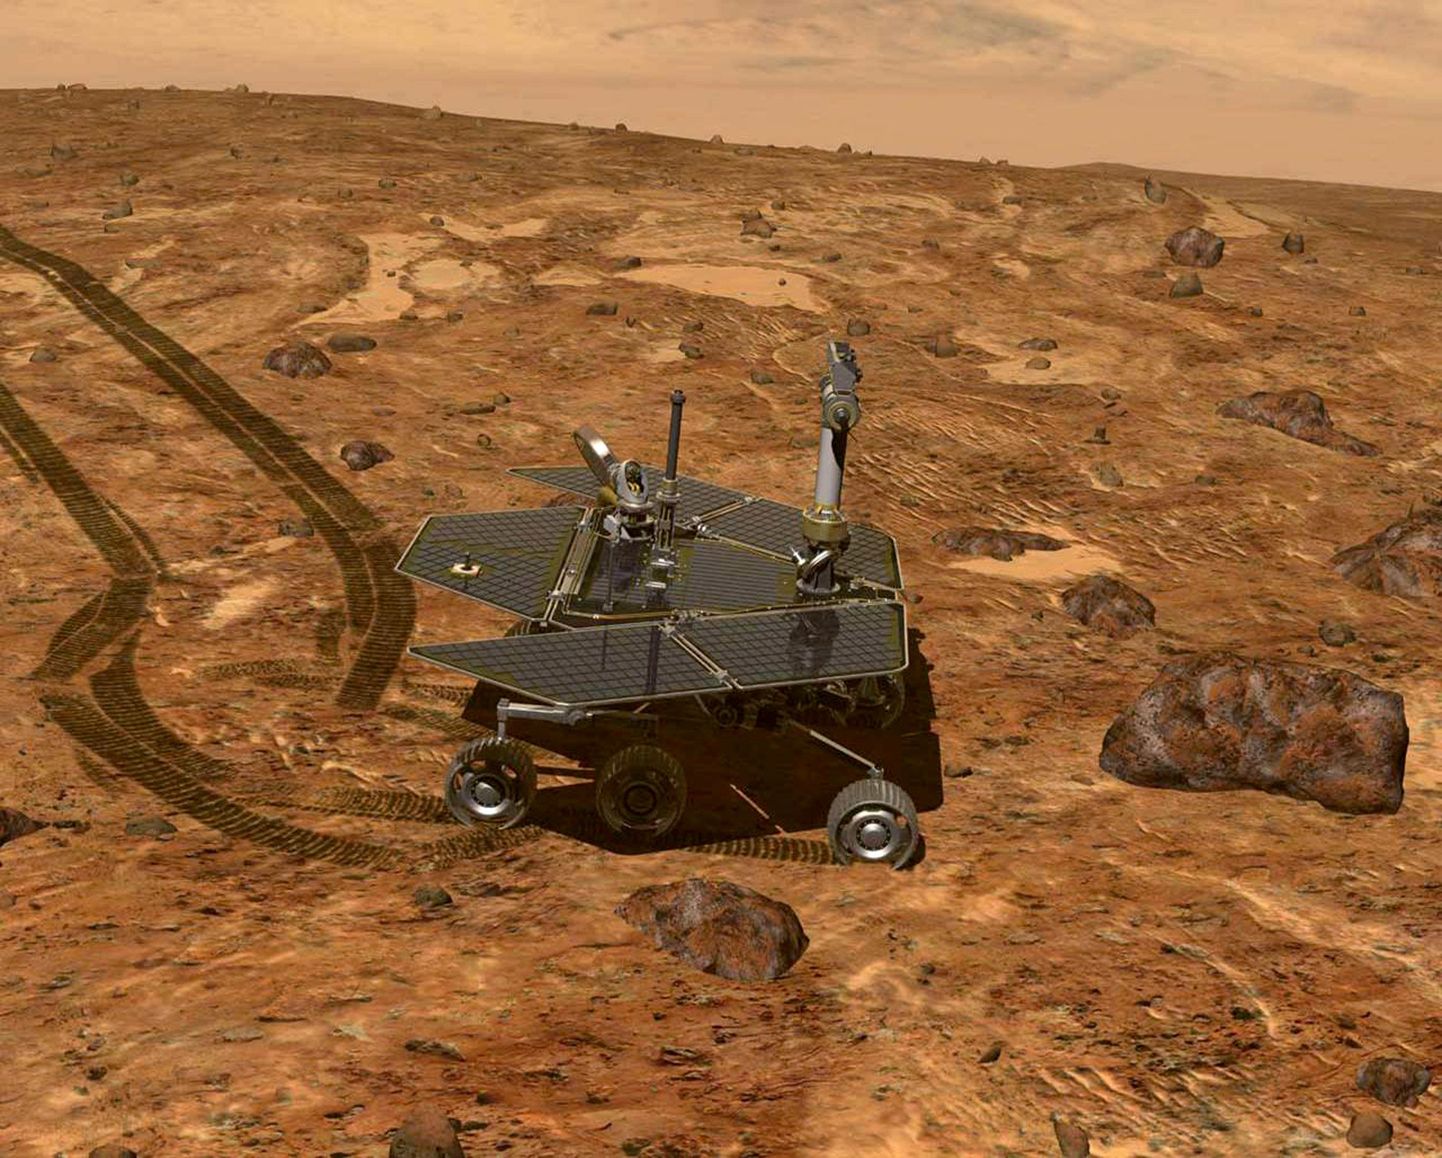 Kunstniku arvutijoonistus Marsi pinna uurimisest